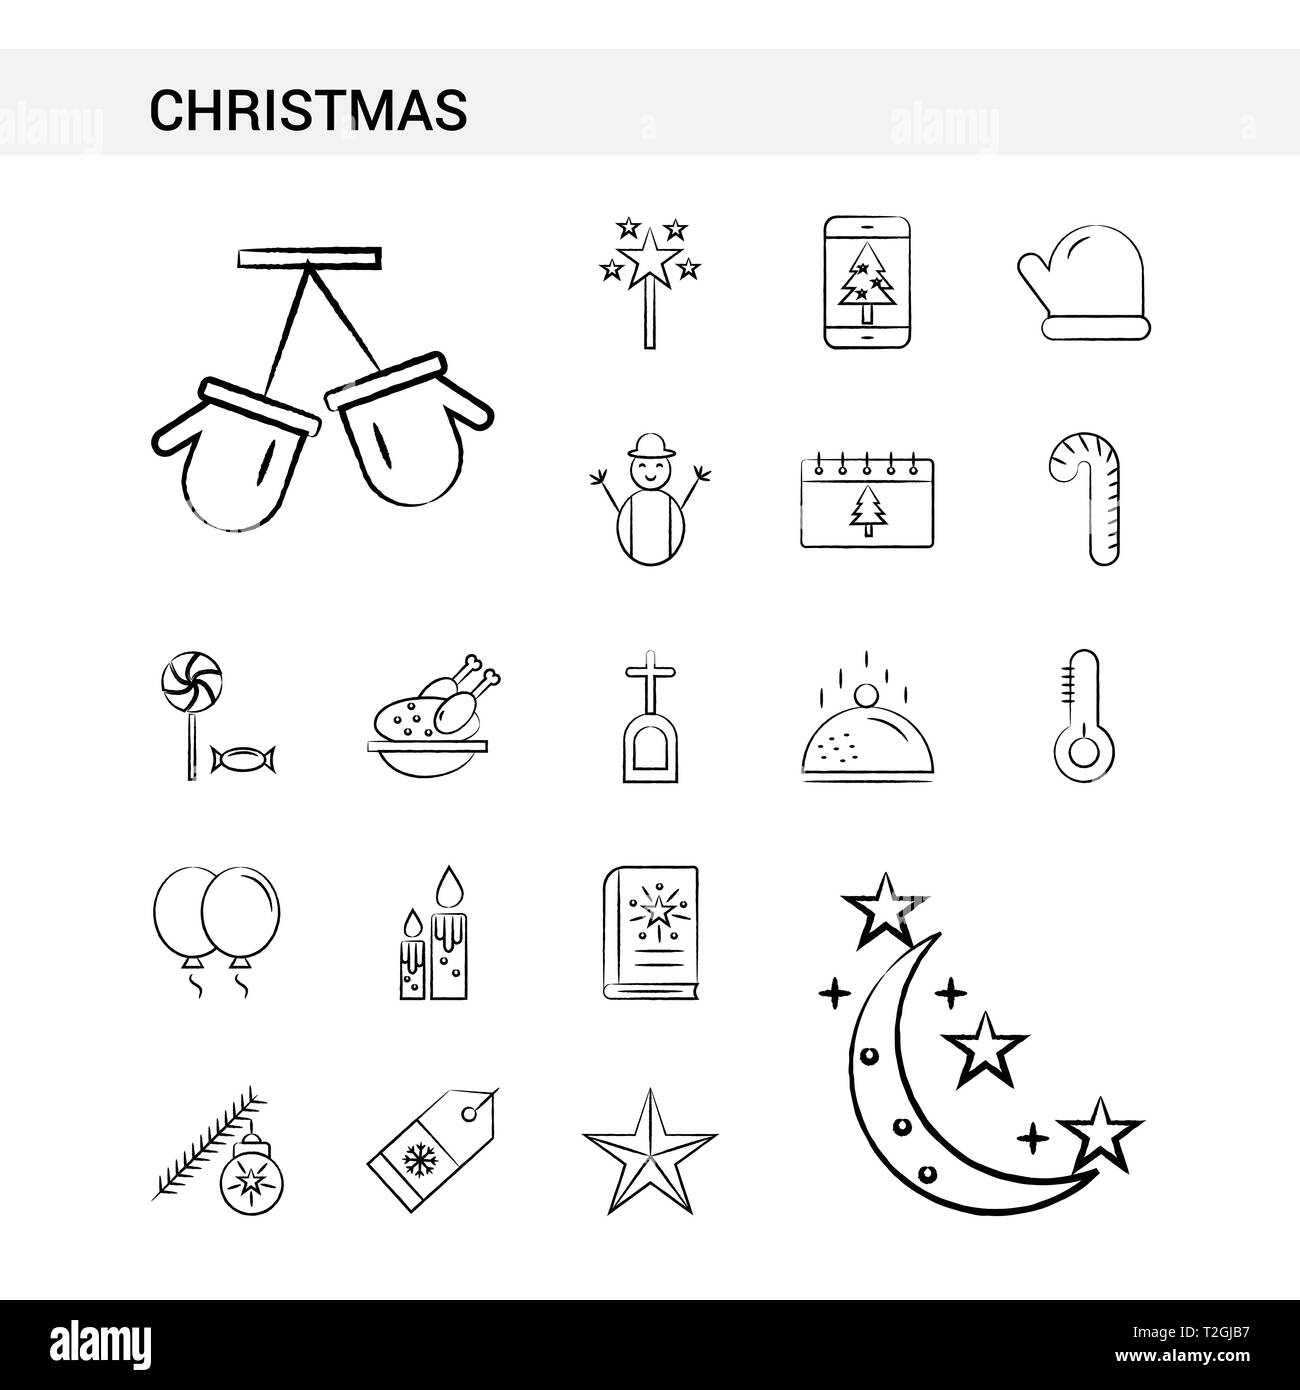 La main de Noël style Icon Set, isolé sur fond blanc. - Vector Illustration de Vecteur